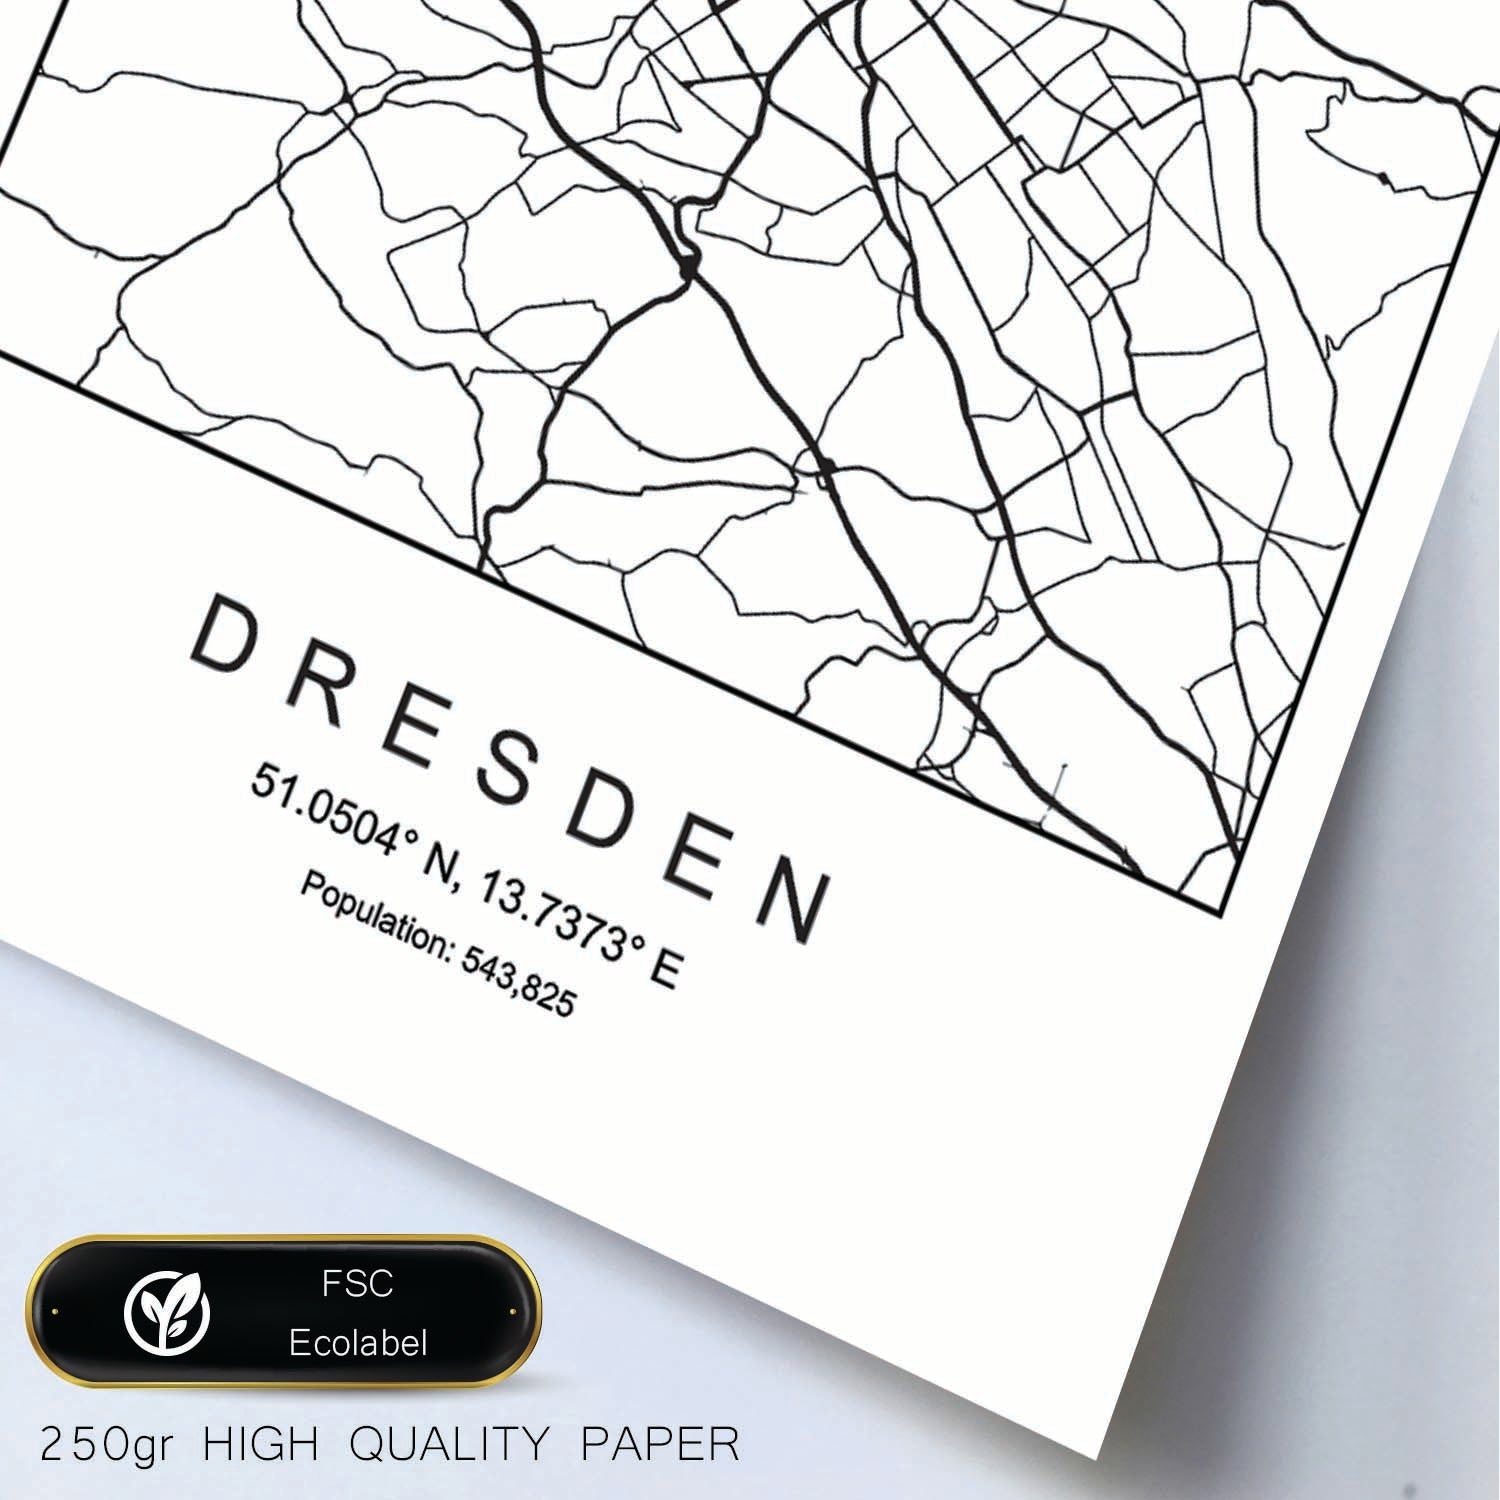 Lámina mapa de la ciudad Dresden estilo nordico en blanco y negro.-Artwork-Nacnic-Nacnic Estudio SL